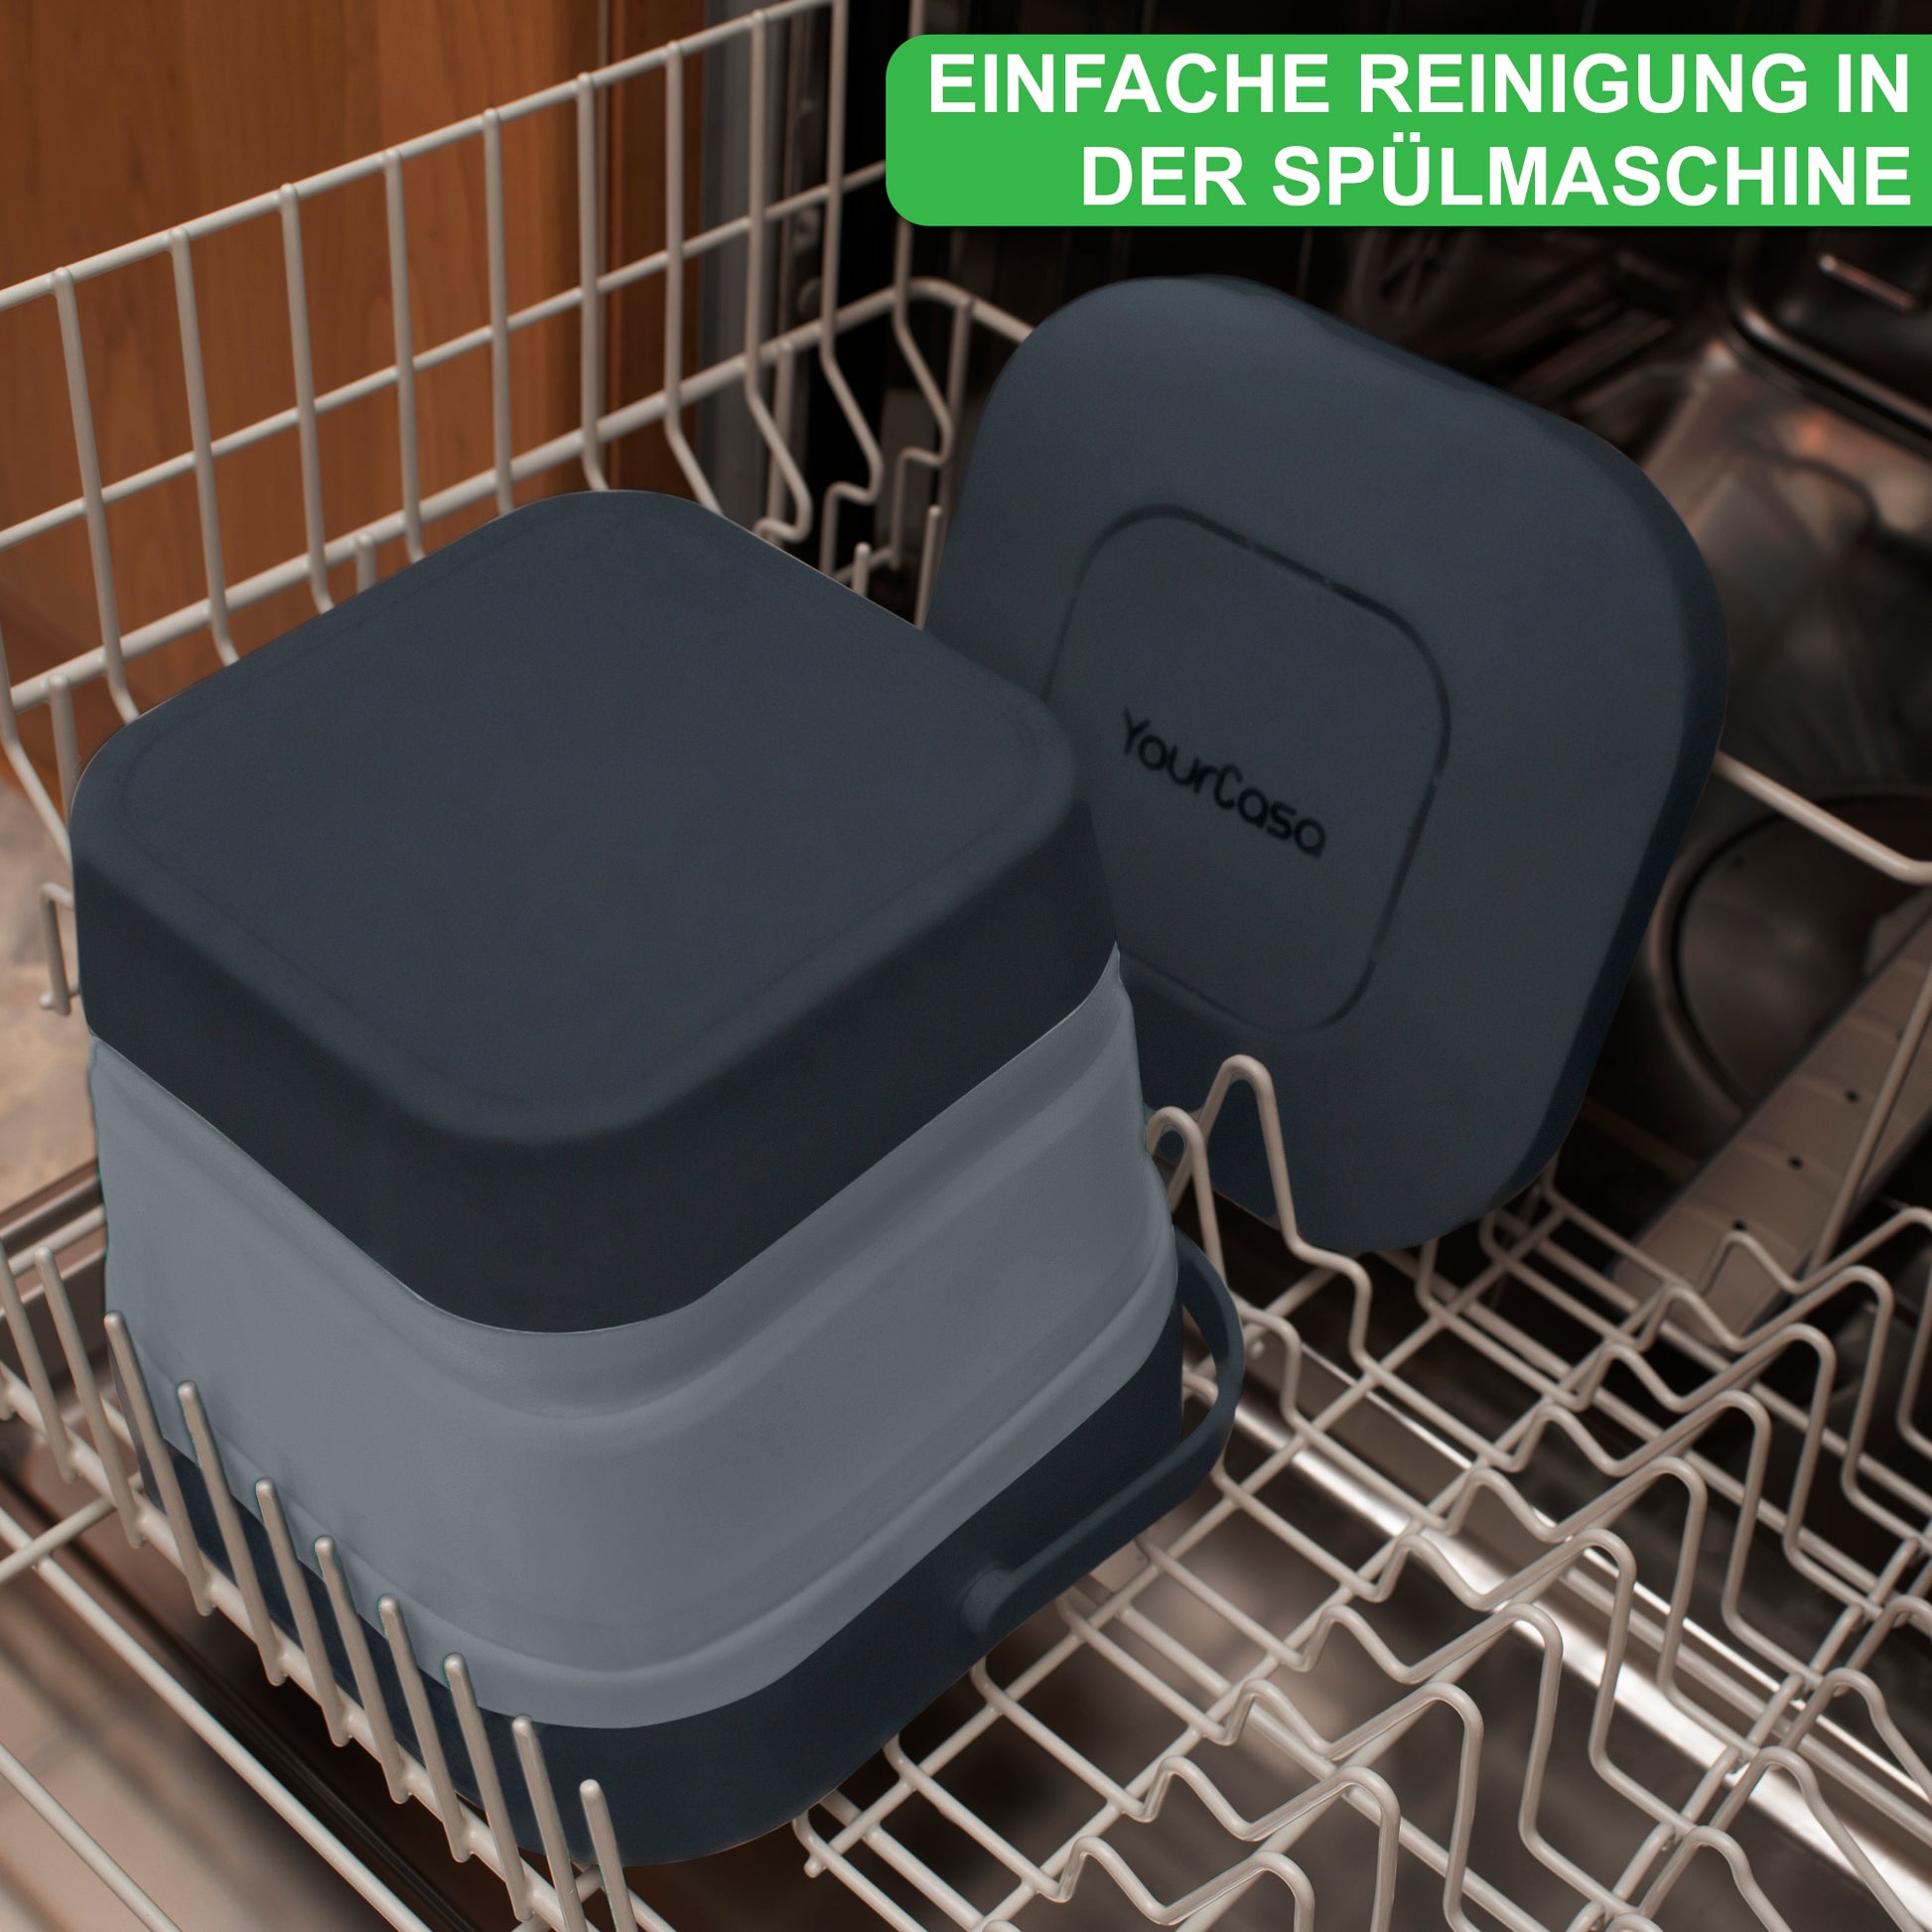 YourCasa® Komposteimer Küche aus spülmaschinenfestem Silikon in einer Spülmaschine, heben die leichte Reinigung hervor.